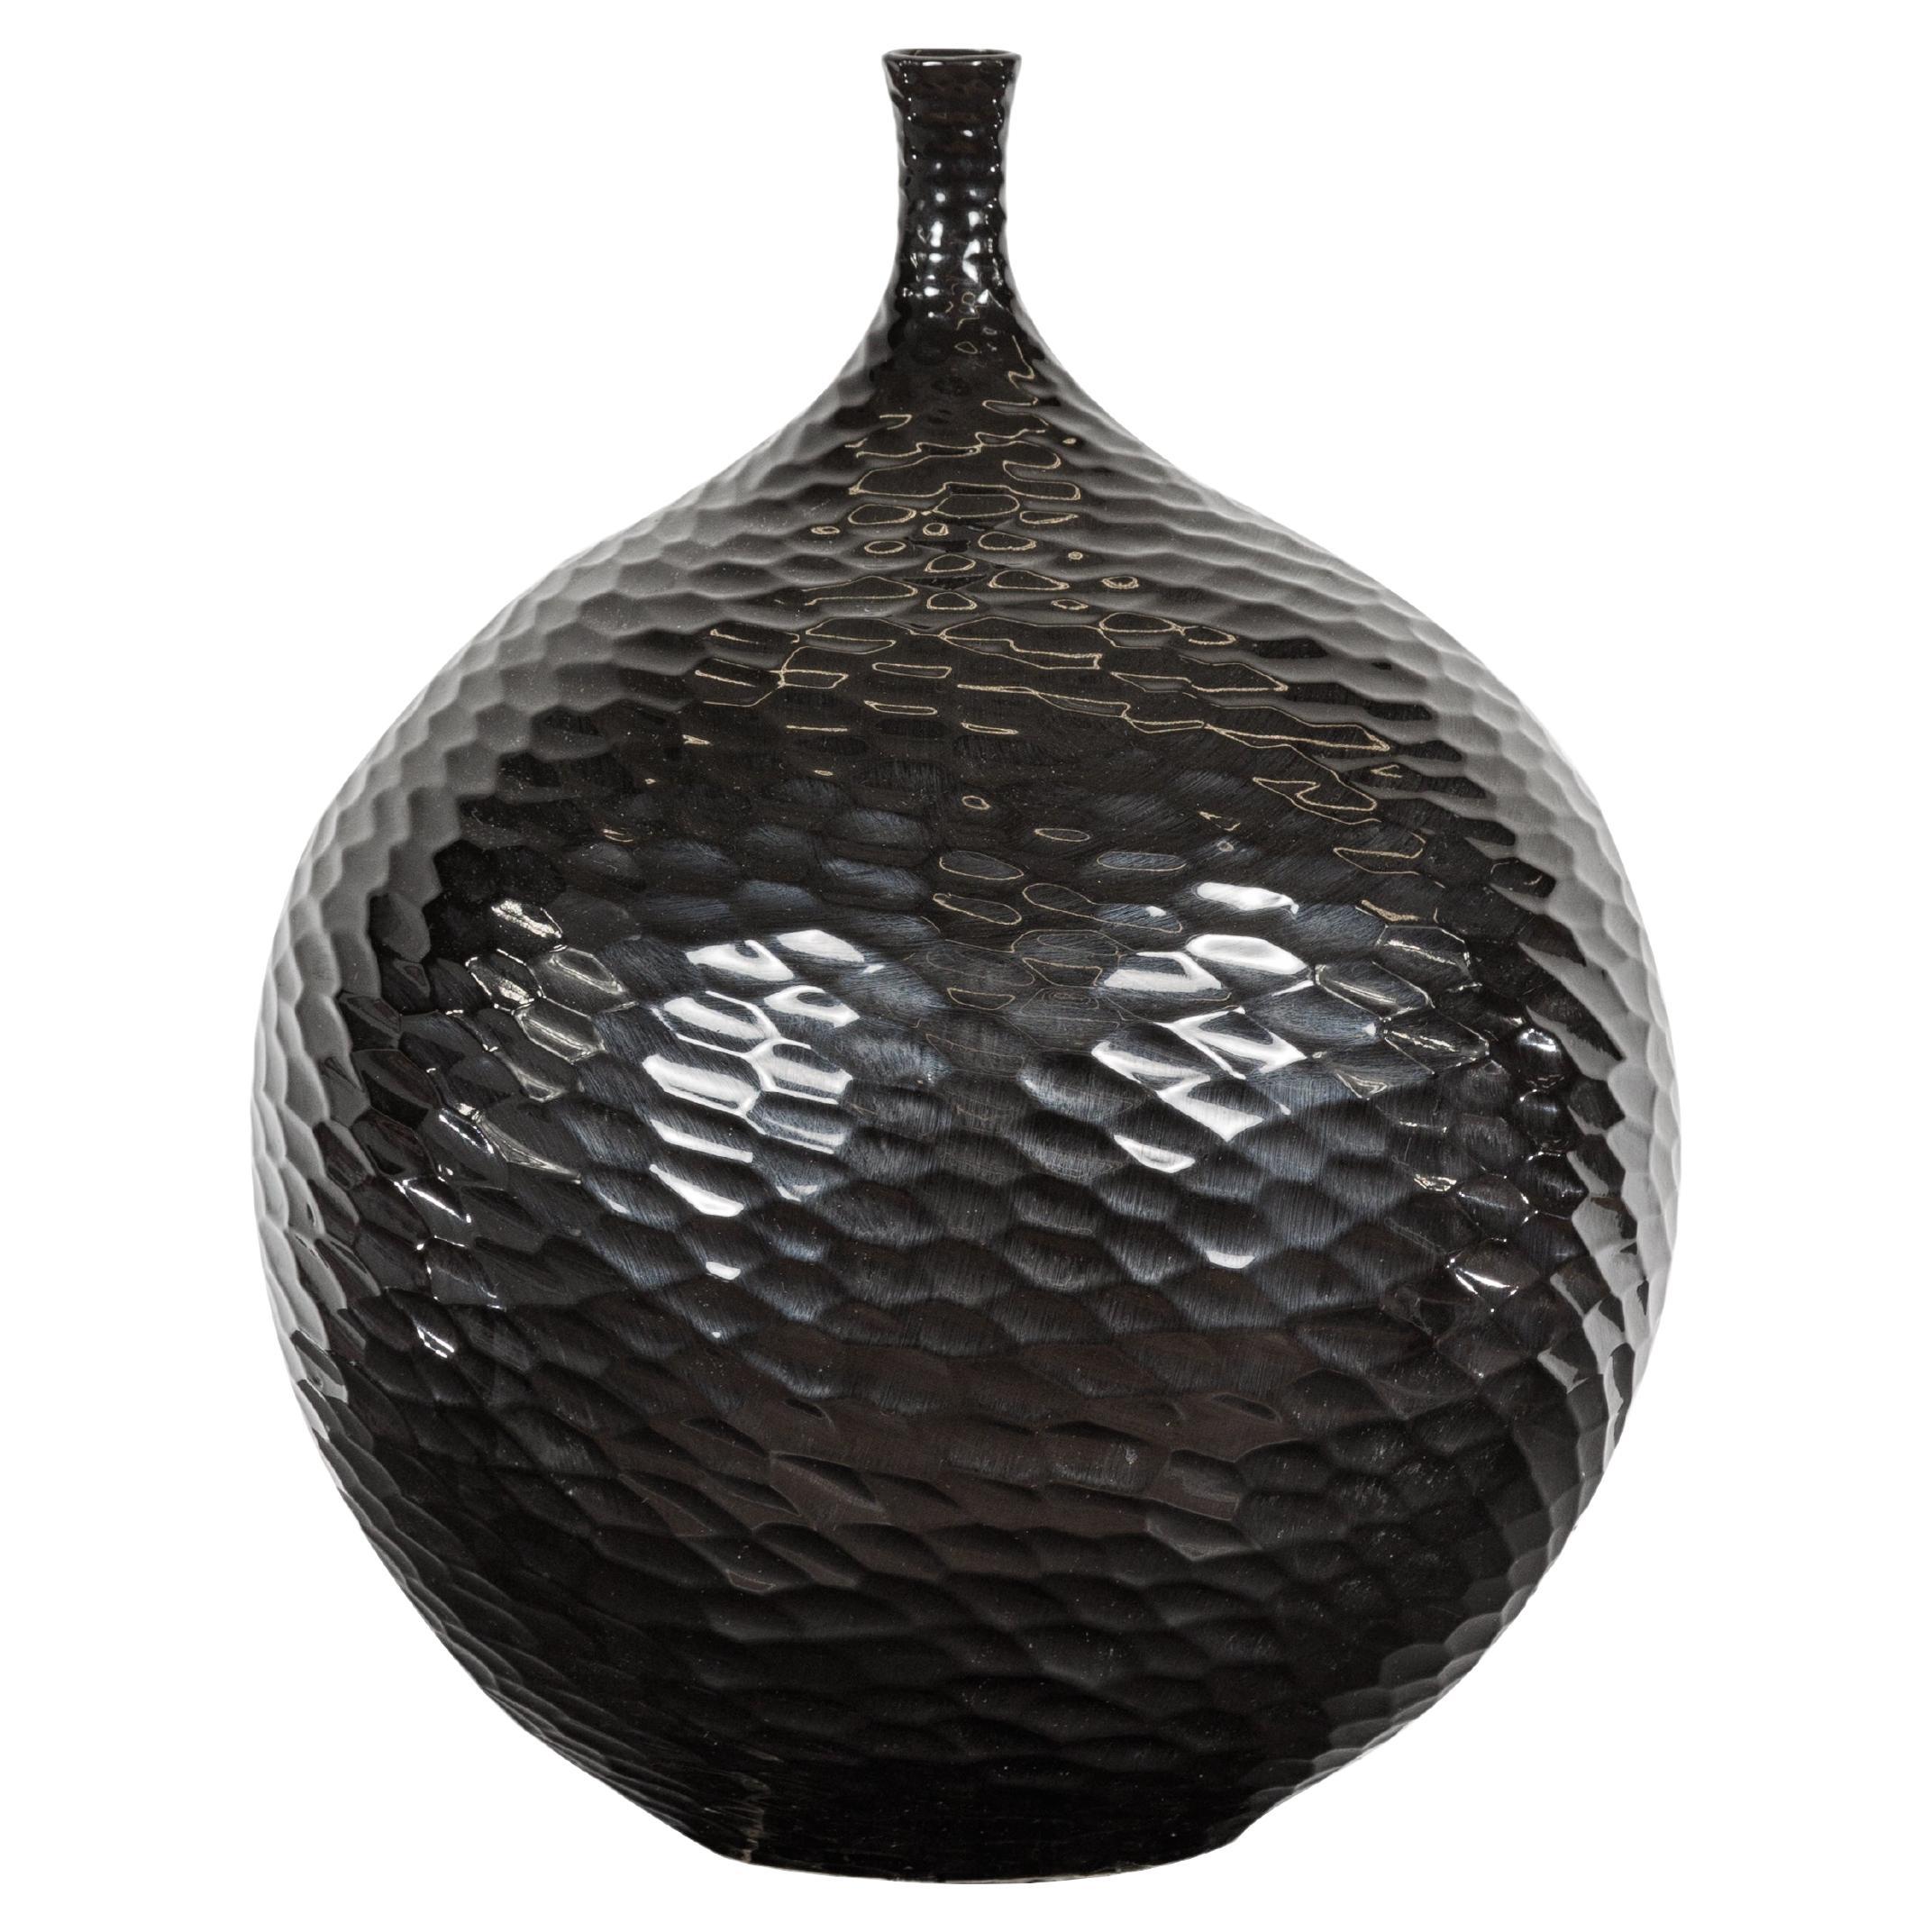 Vase artisanal en forme de bulbe émaillé noir avec motifs en nid d'abeille et ouverture étroite